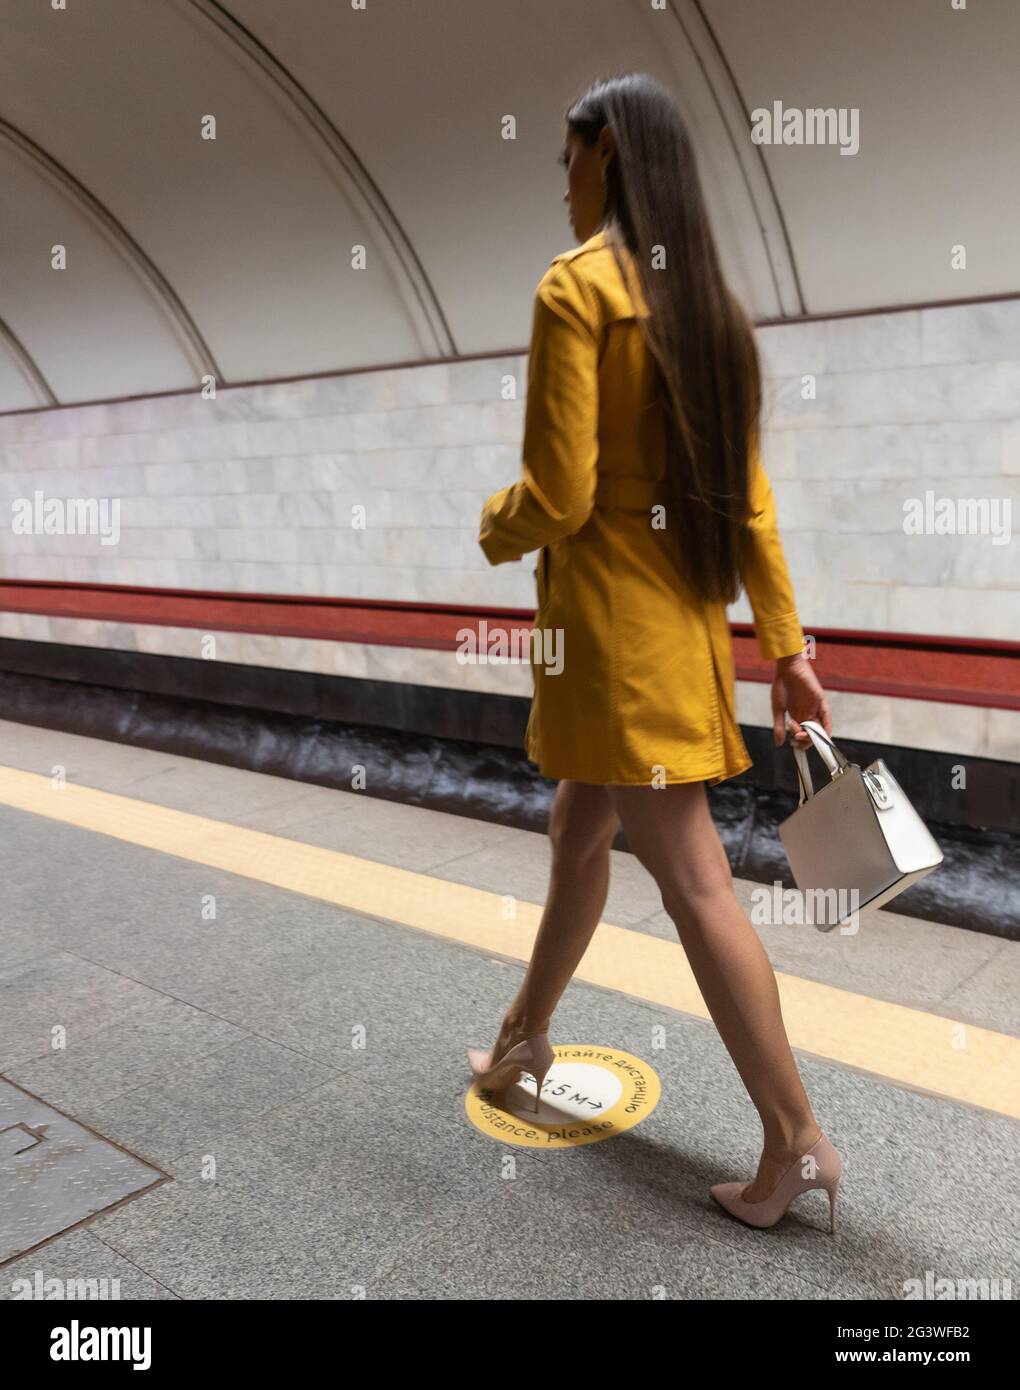 Vista posteriore di una passeggiata sulla piattaforma della metropolitana bella ragazza giovane con lunghe e belle gambe con un cappotto di primavera giallo e un bianco Foto Stock